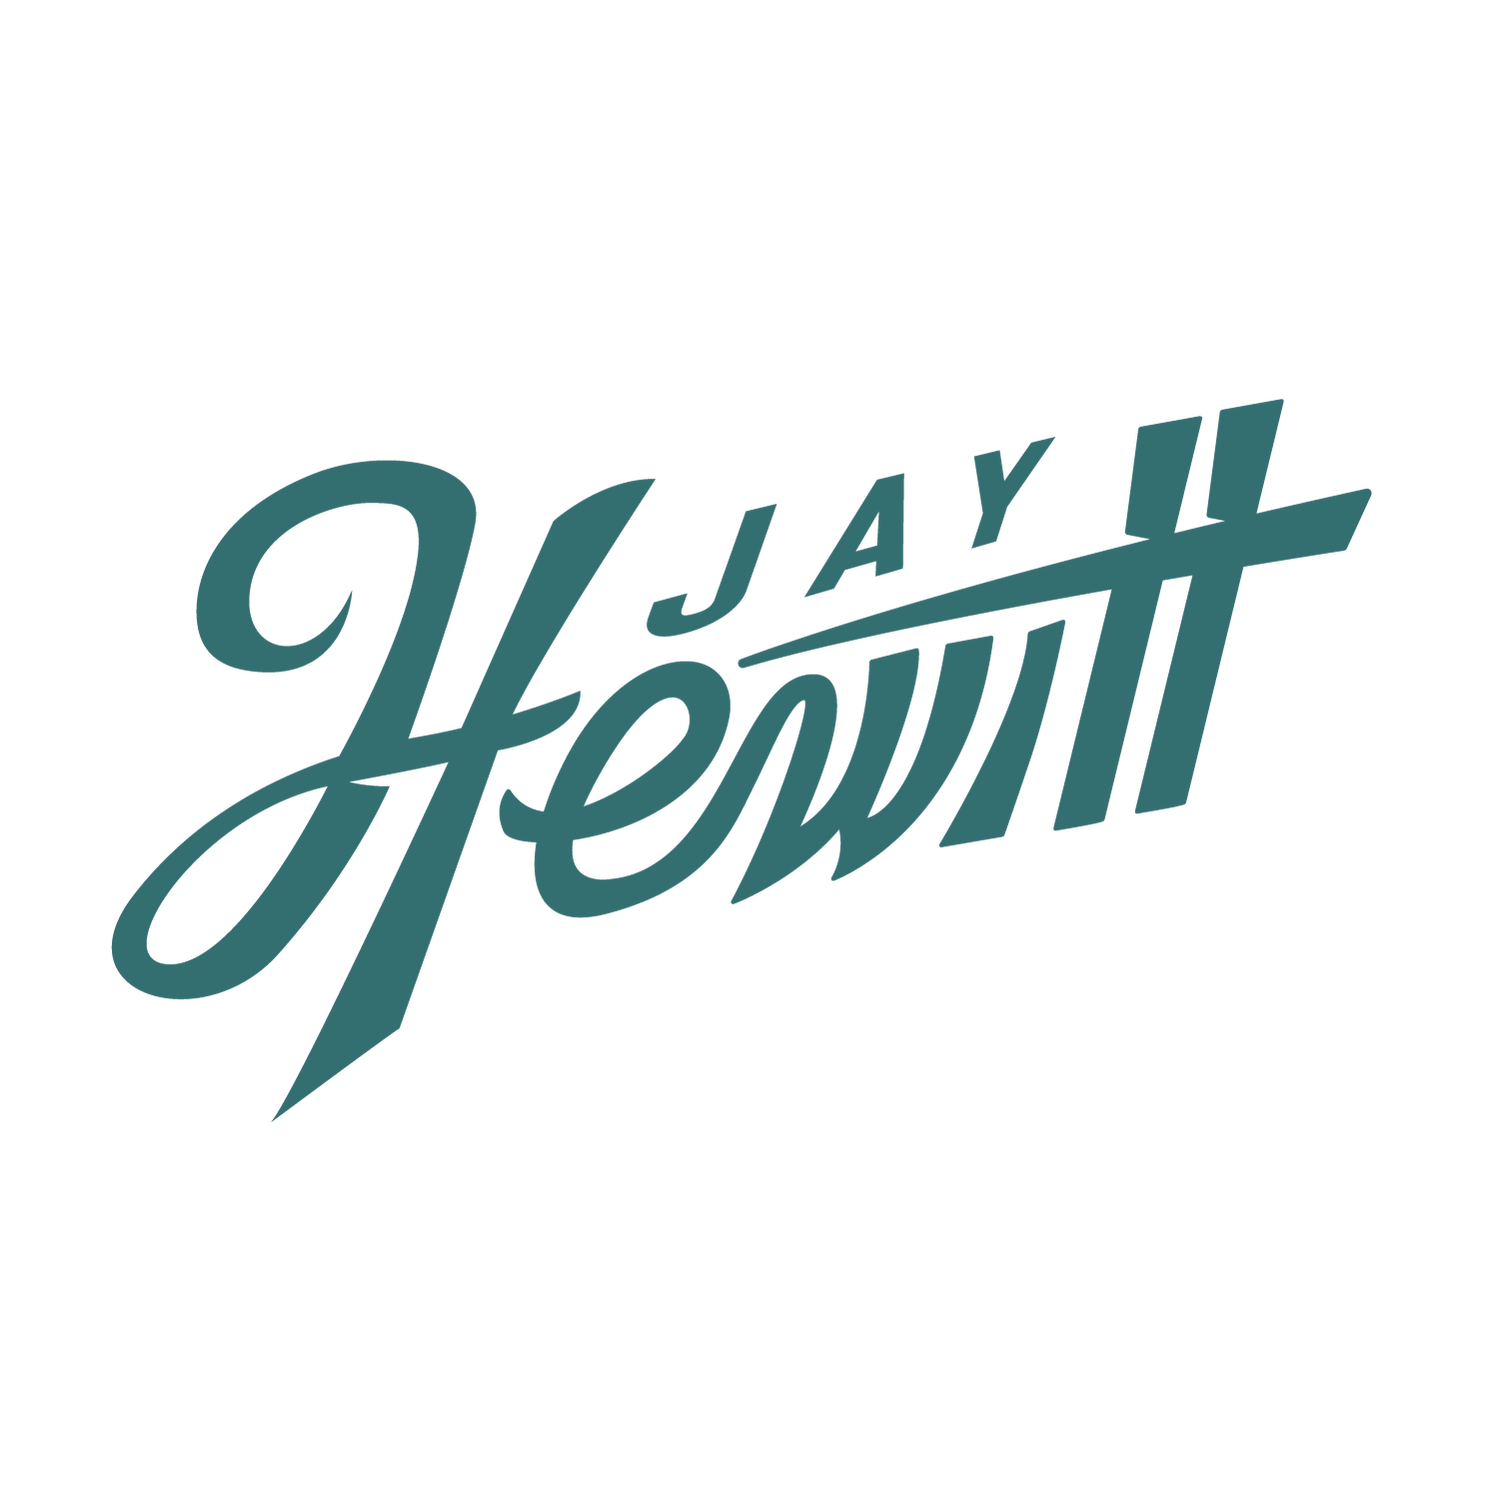 Jay Hewitt